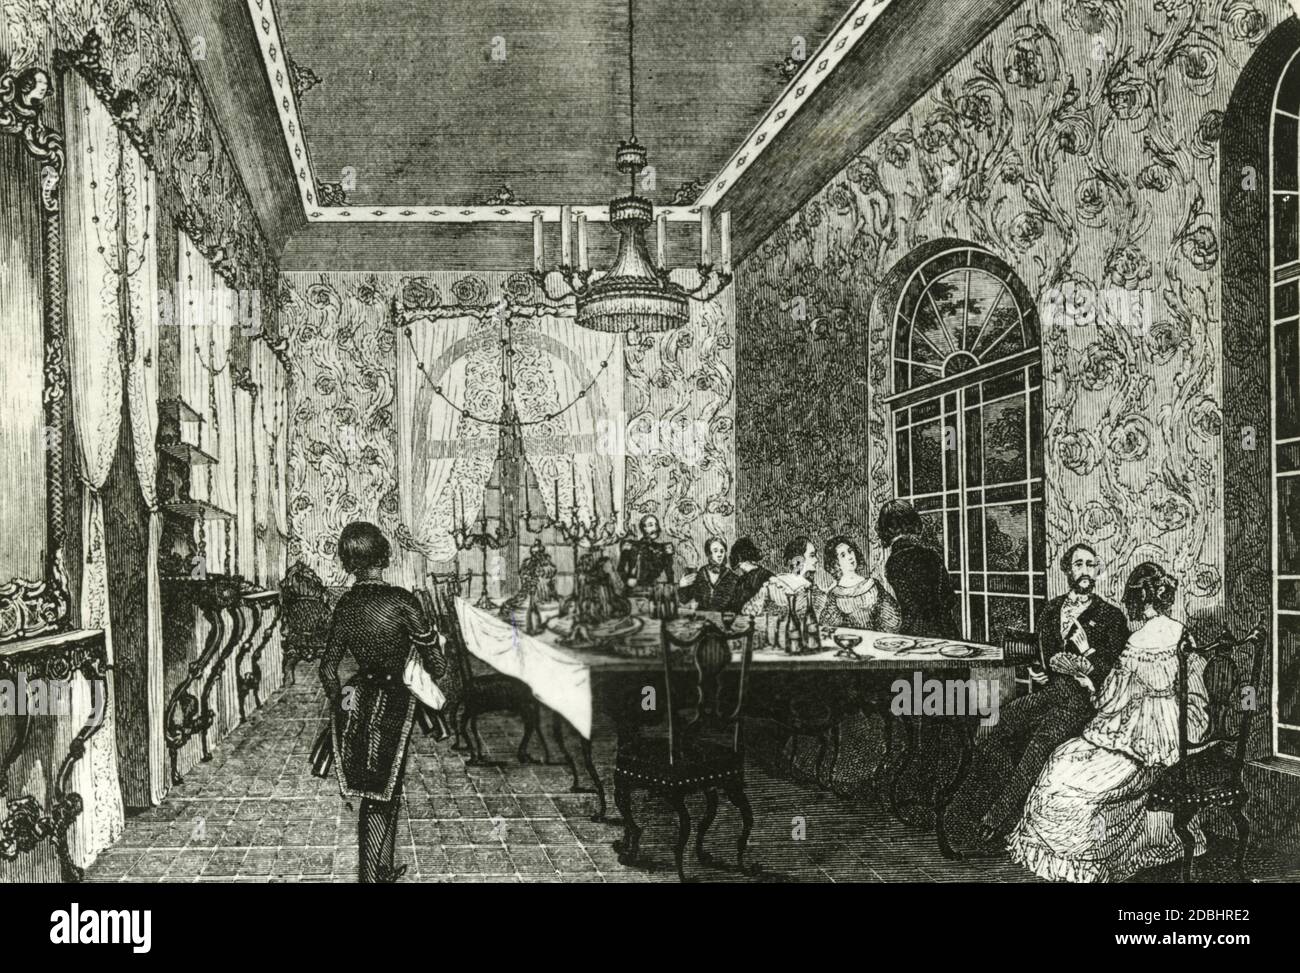 El grabado muestra una fiesta nocturna en el Renaissance Hall del Kroll Etablissement (más tarde Kroll Opera) en Berlín-Mitte, que fue inaugurado en 1844. Foto de stock